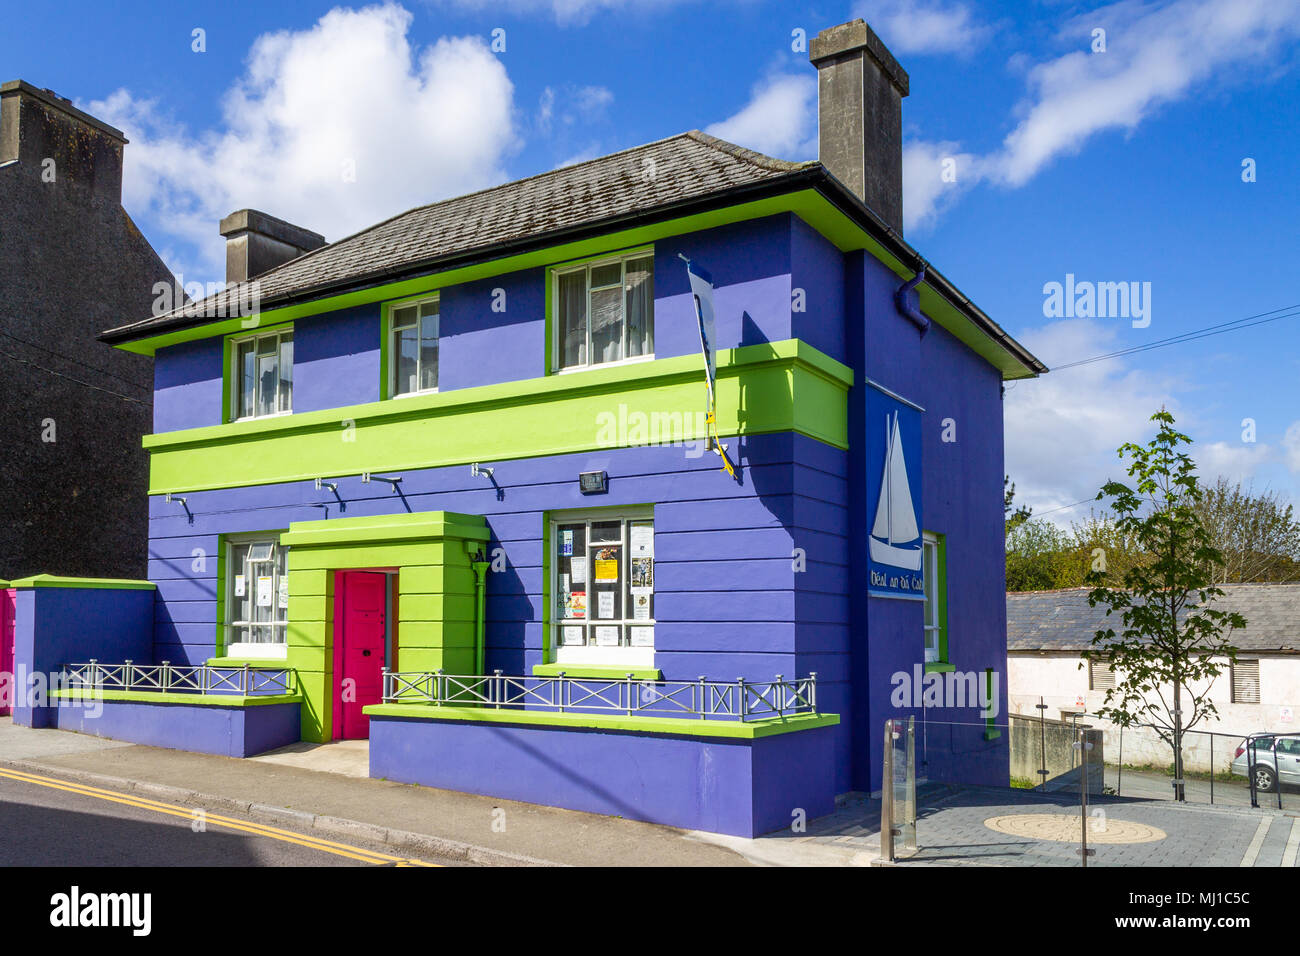 Ziegelgebäude bunt oder farbig leuchtenden blauen und grünen gebaut, einem umgebauten inländischen Haus, die sich in der Mittagssonne. Stockfoto